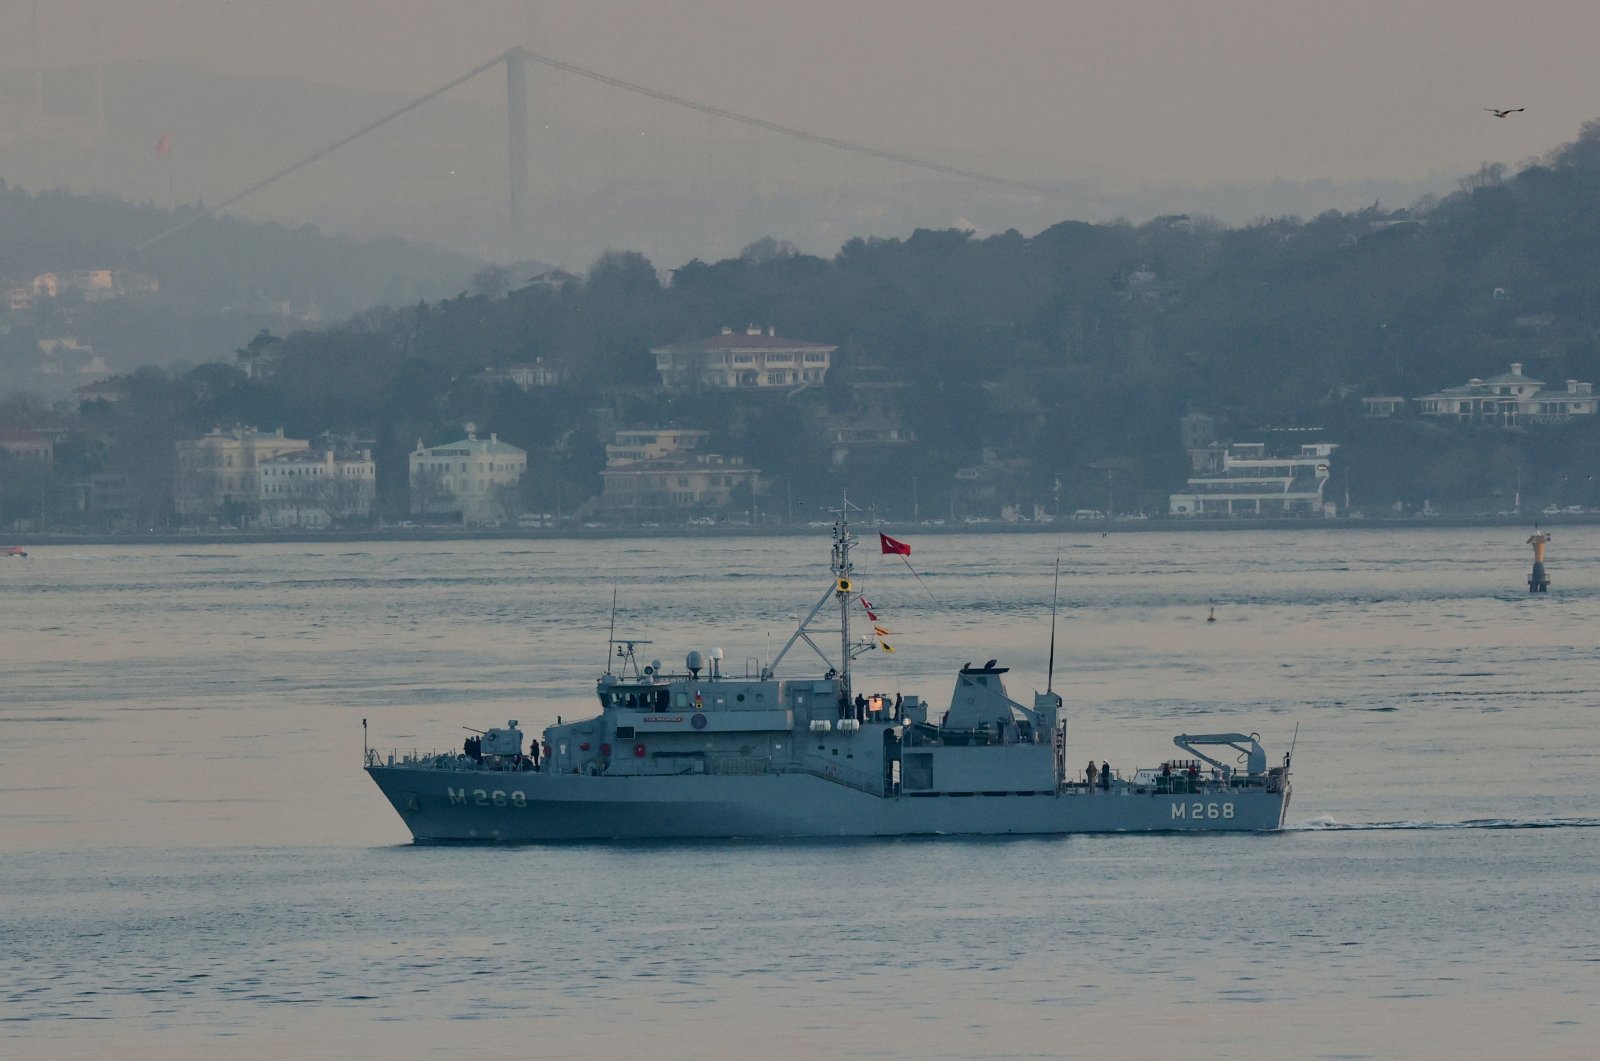 Unit Turki waspada terhadap ranjau laut yang hanyut: Menteri Pertahanan